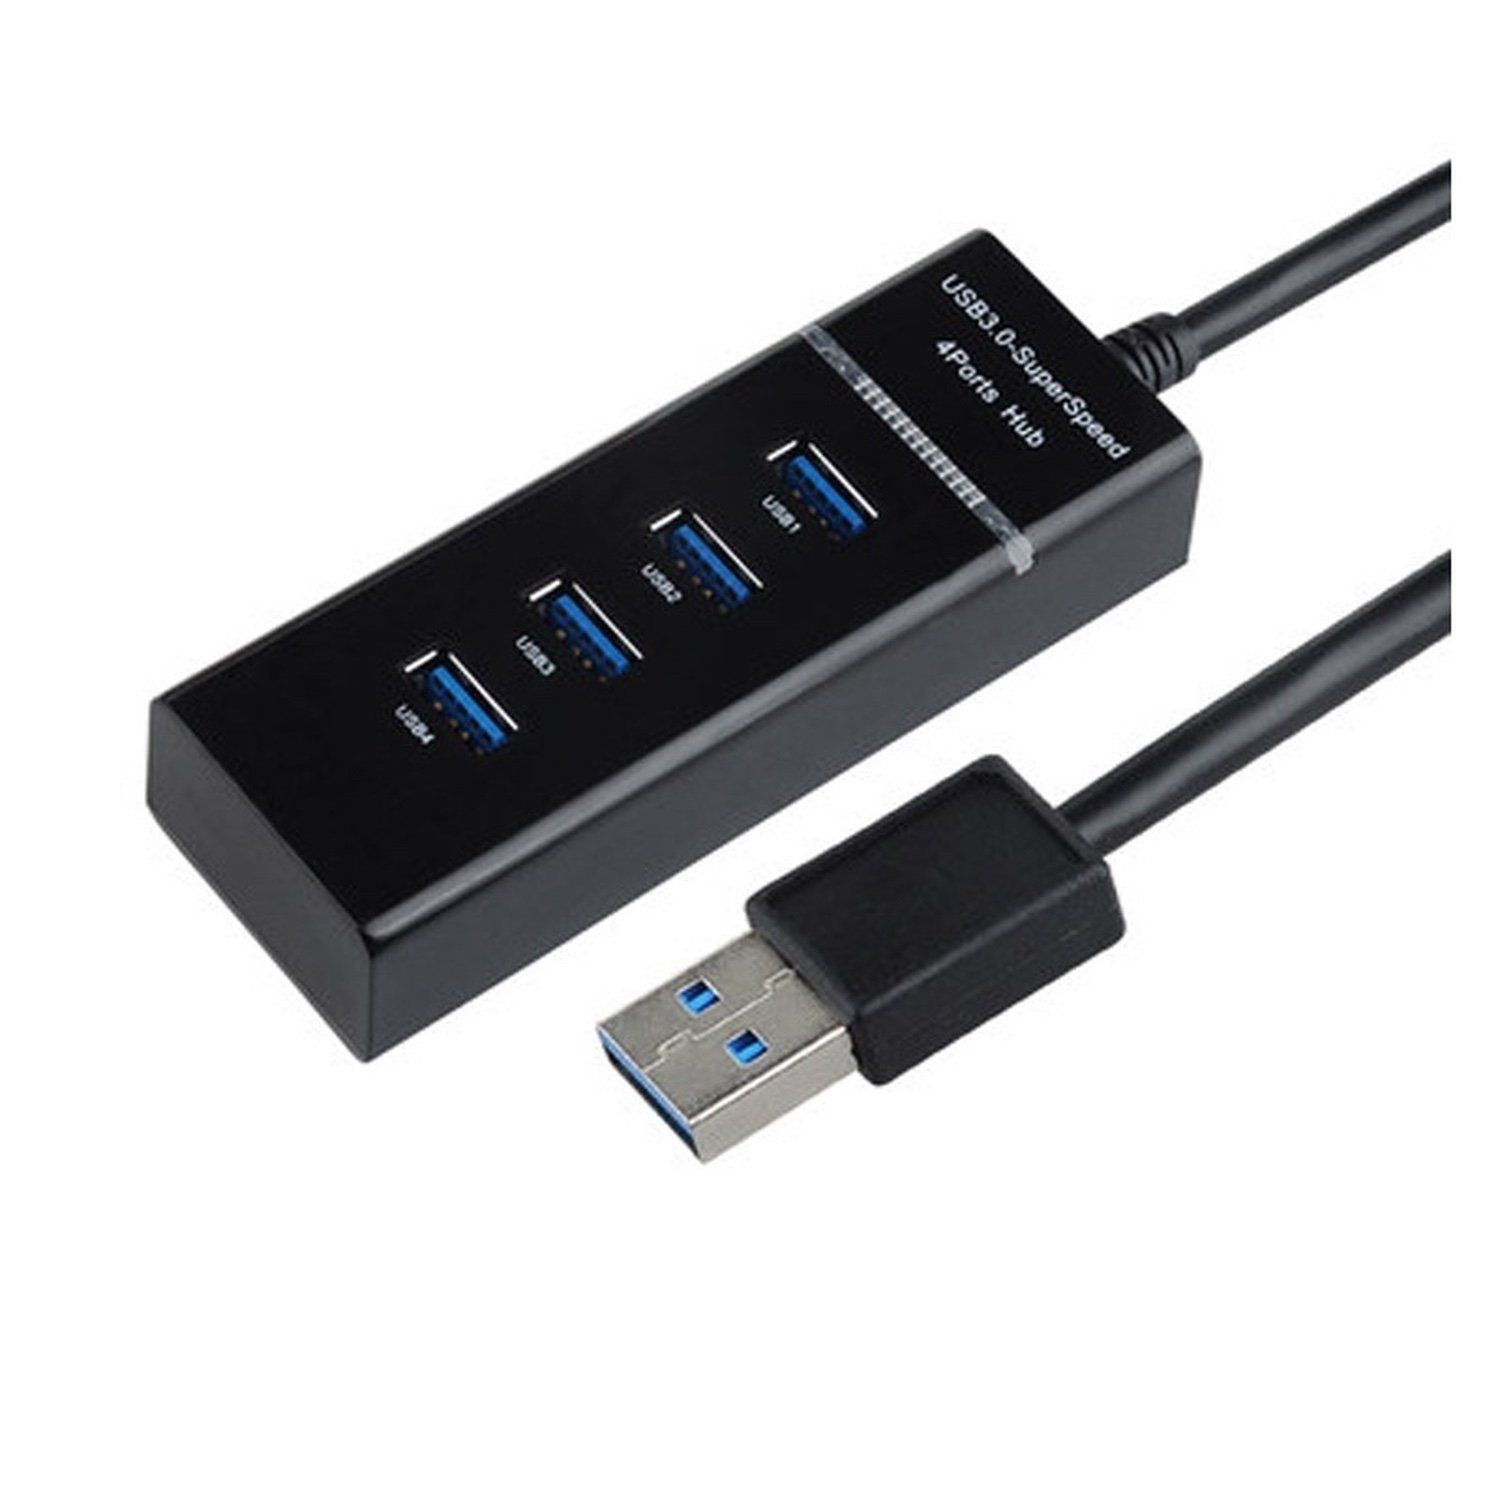 Hub USB 3.0 de 4 puertos, adaptador multipuerto USB con 4 puertos de datos  de 5 Gbps, cable de 3.3 pies, puerto USB, extensor USB portátil, divisor